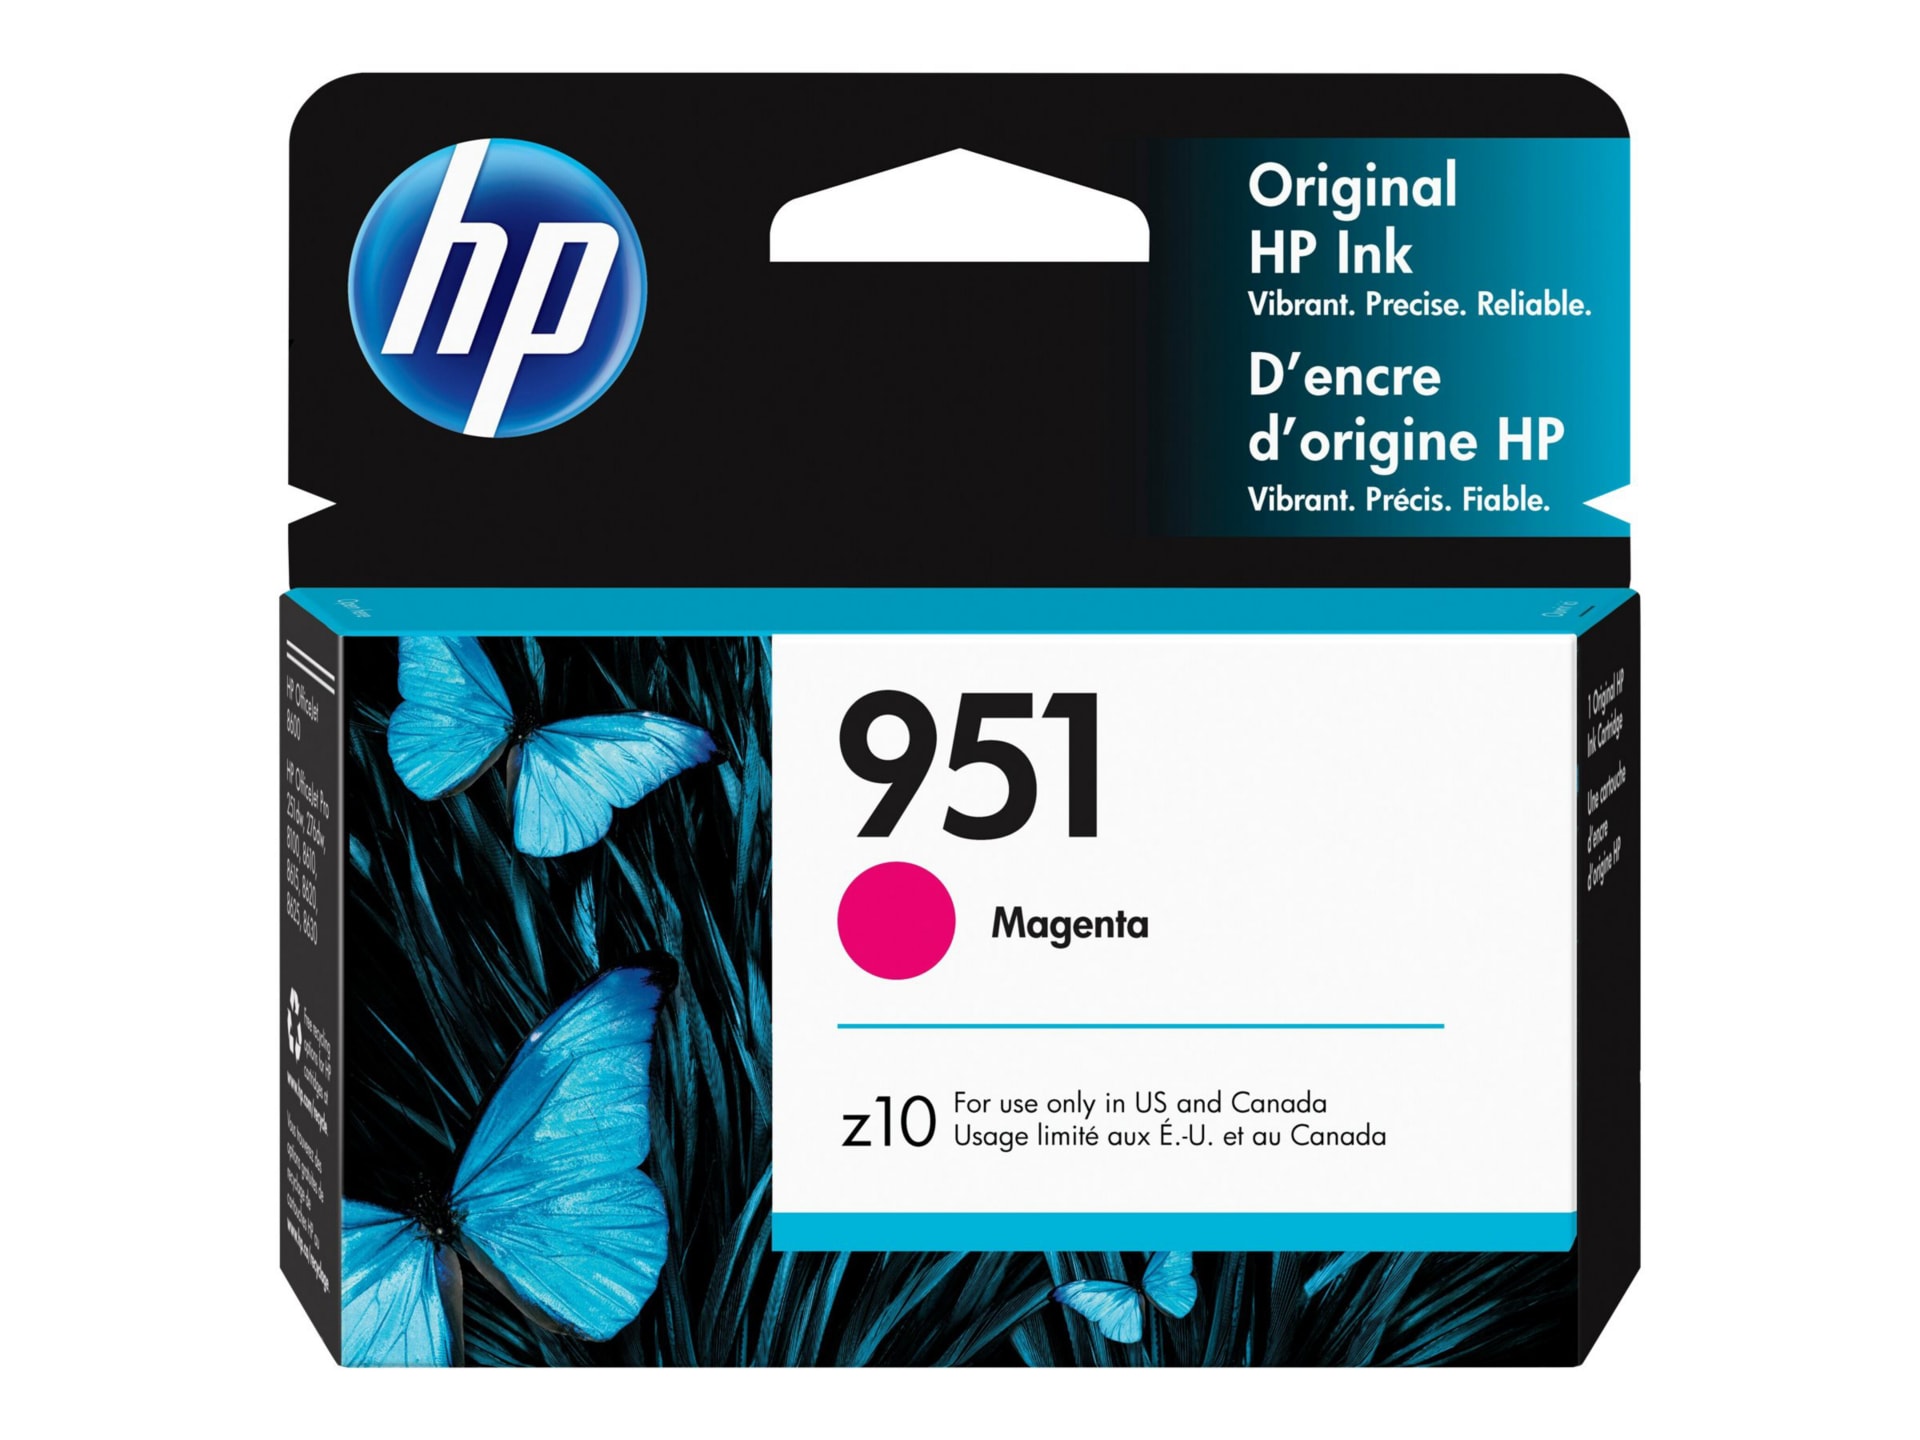 HP 951 Original Inkjet Ink Cartridge - Magenta - 1 Pack